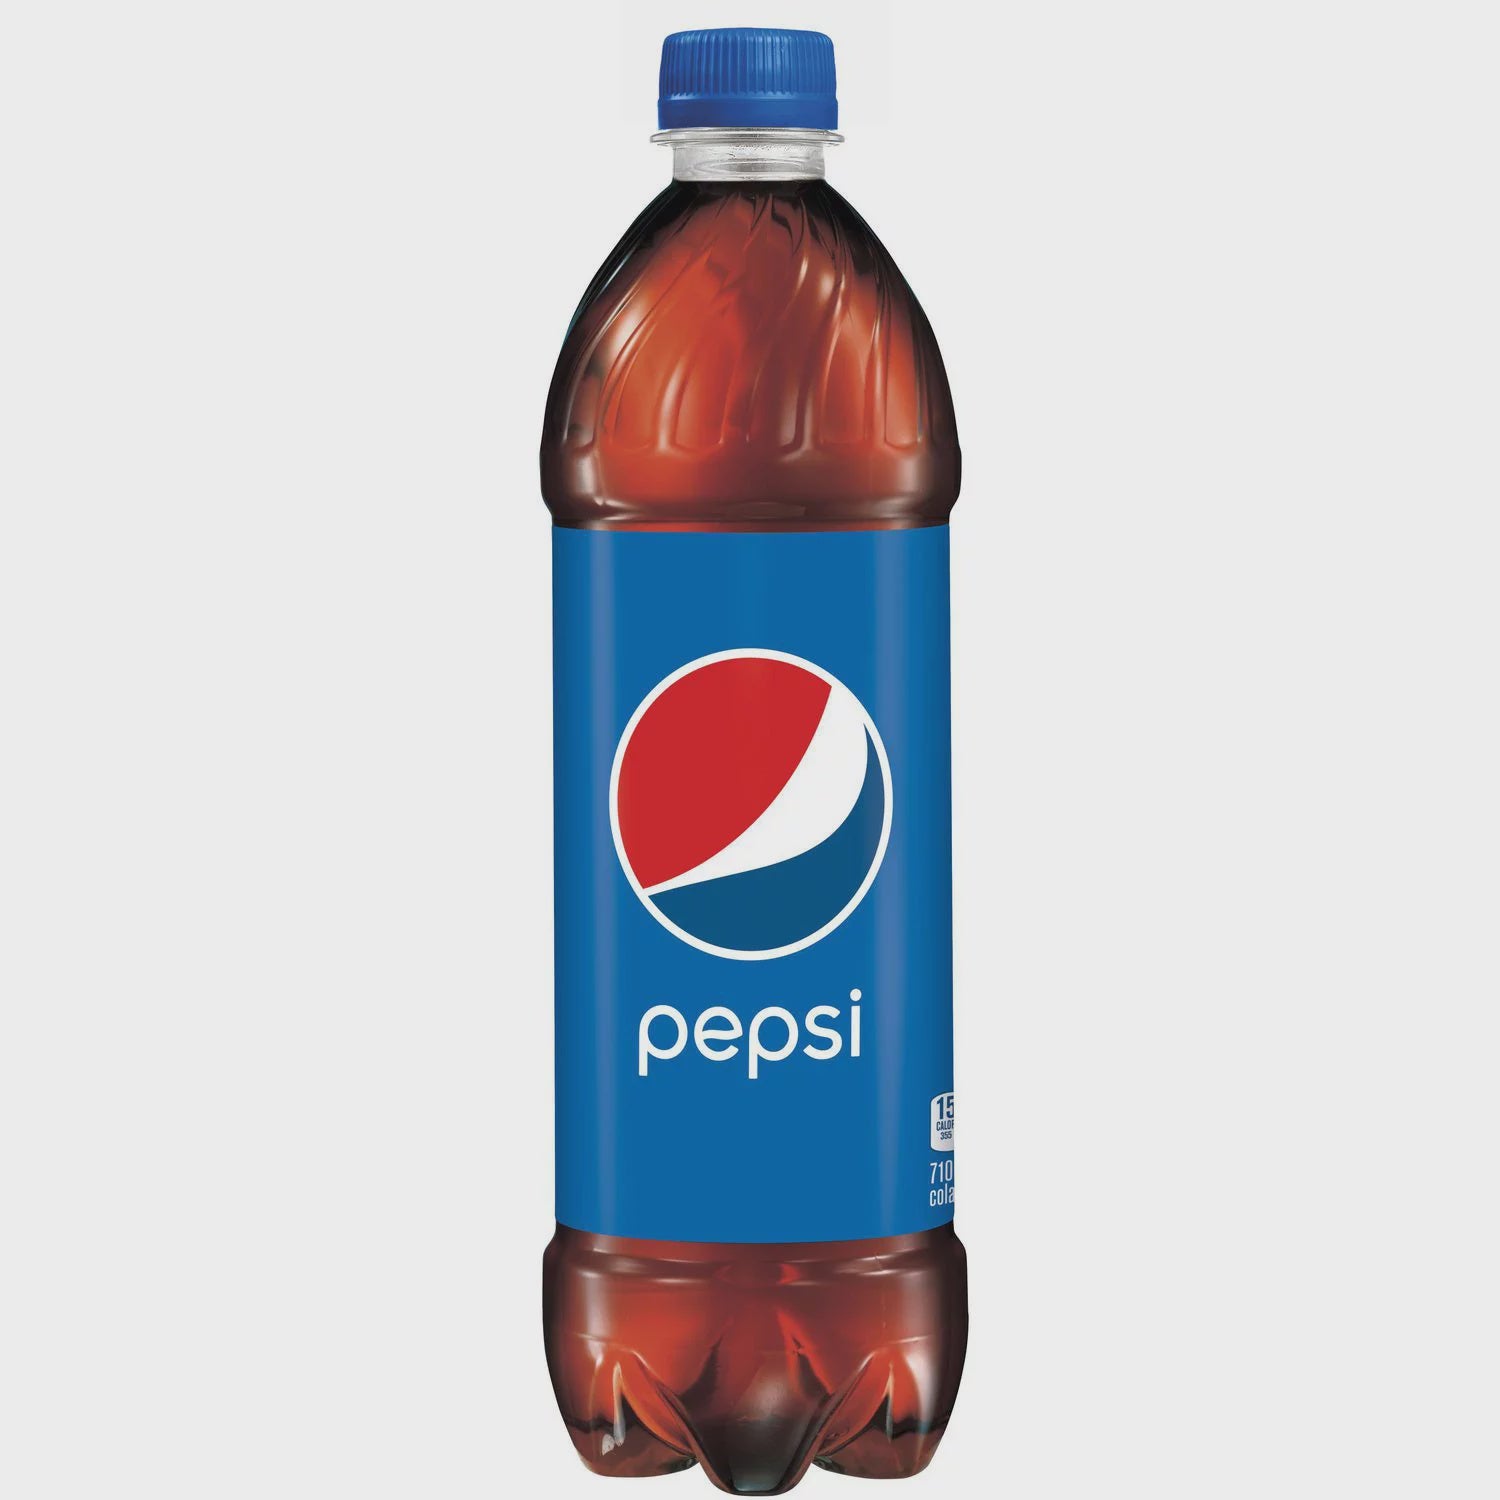 Pepsi 710ml